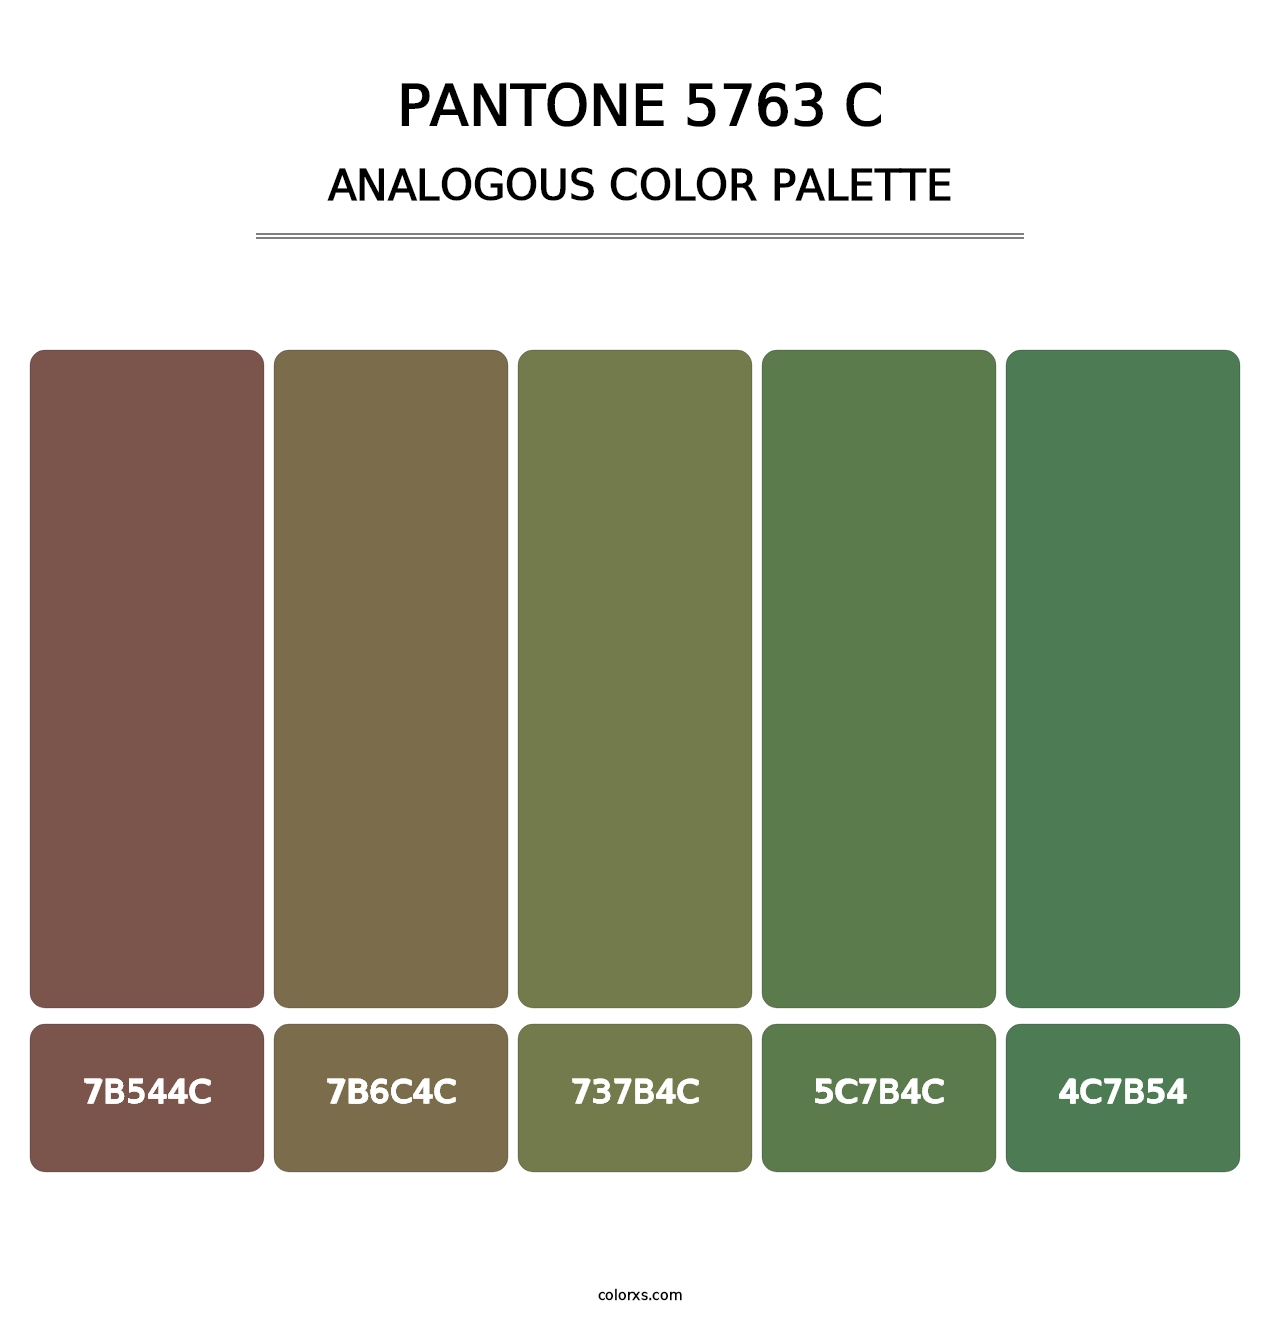 PANTONE 5763 C - Analogous Color Palette